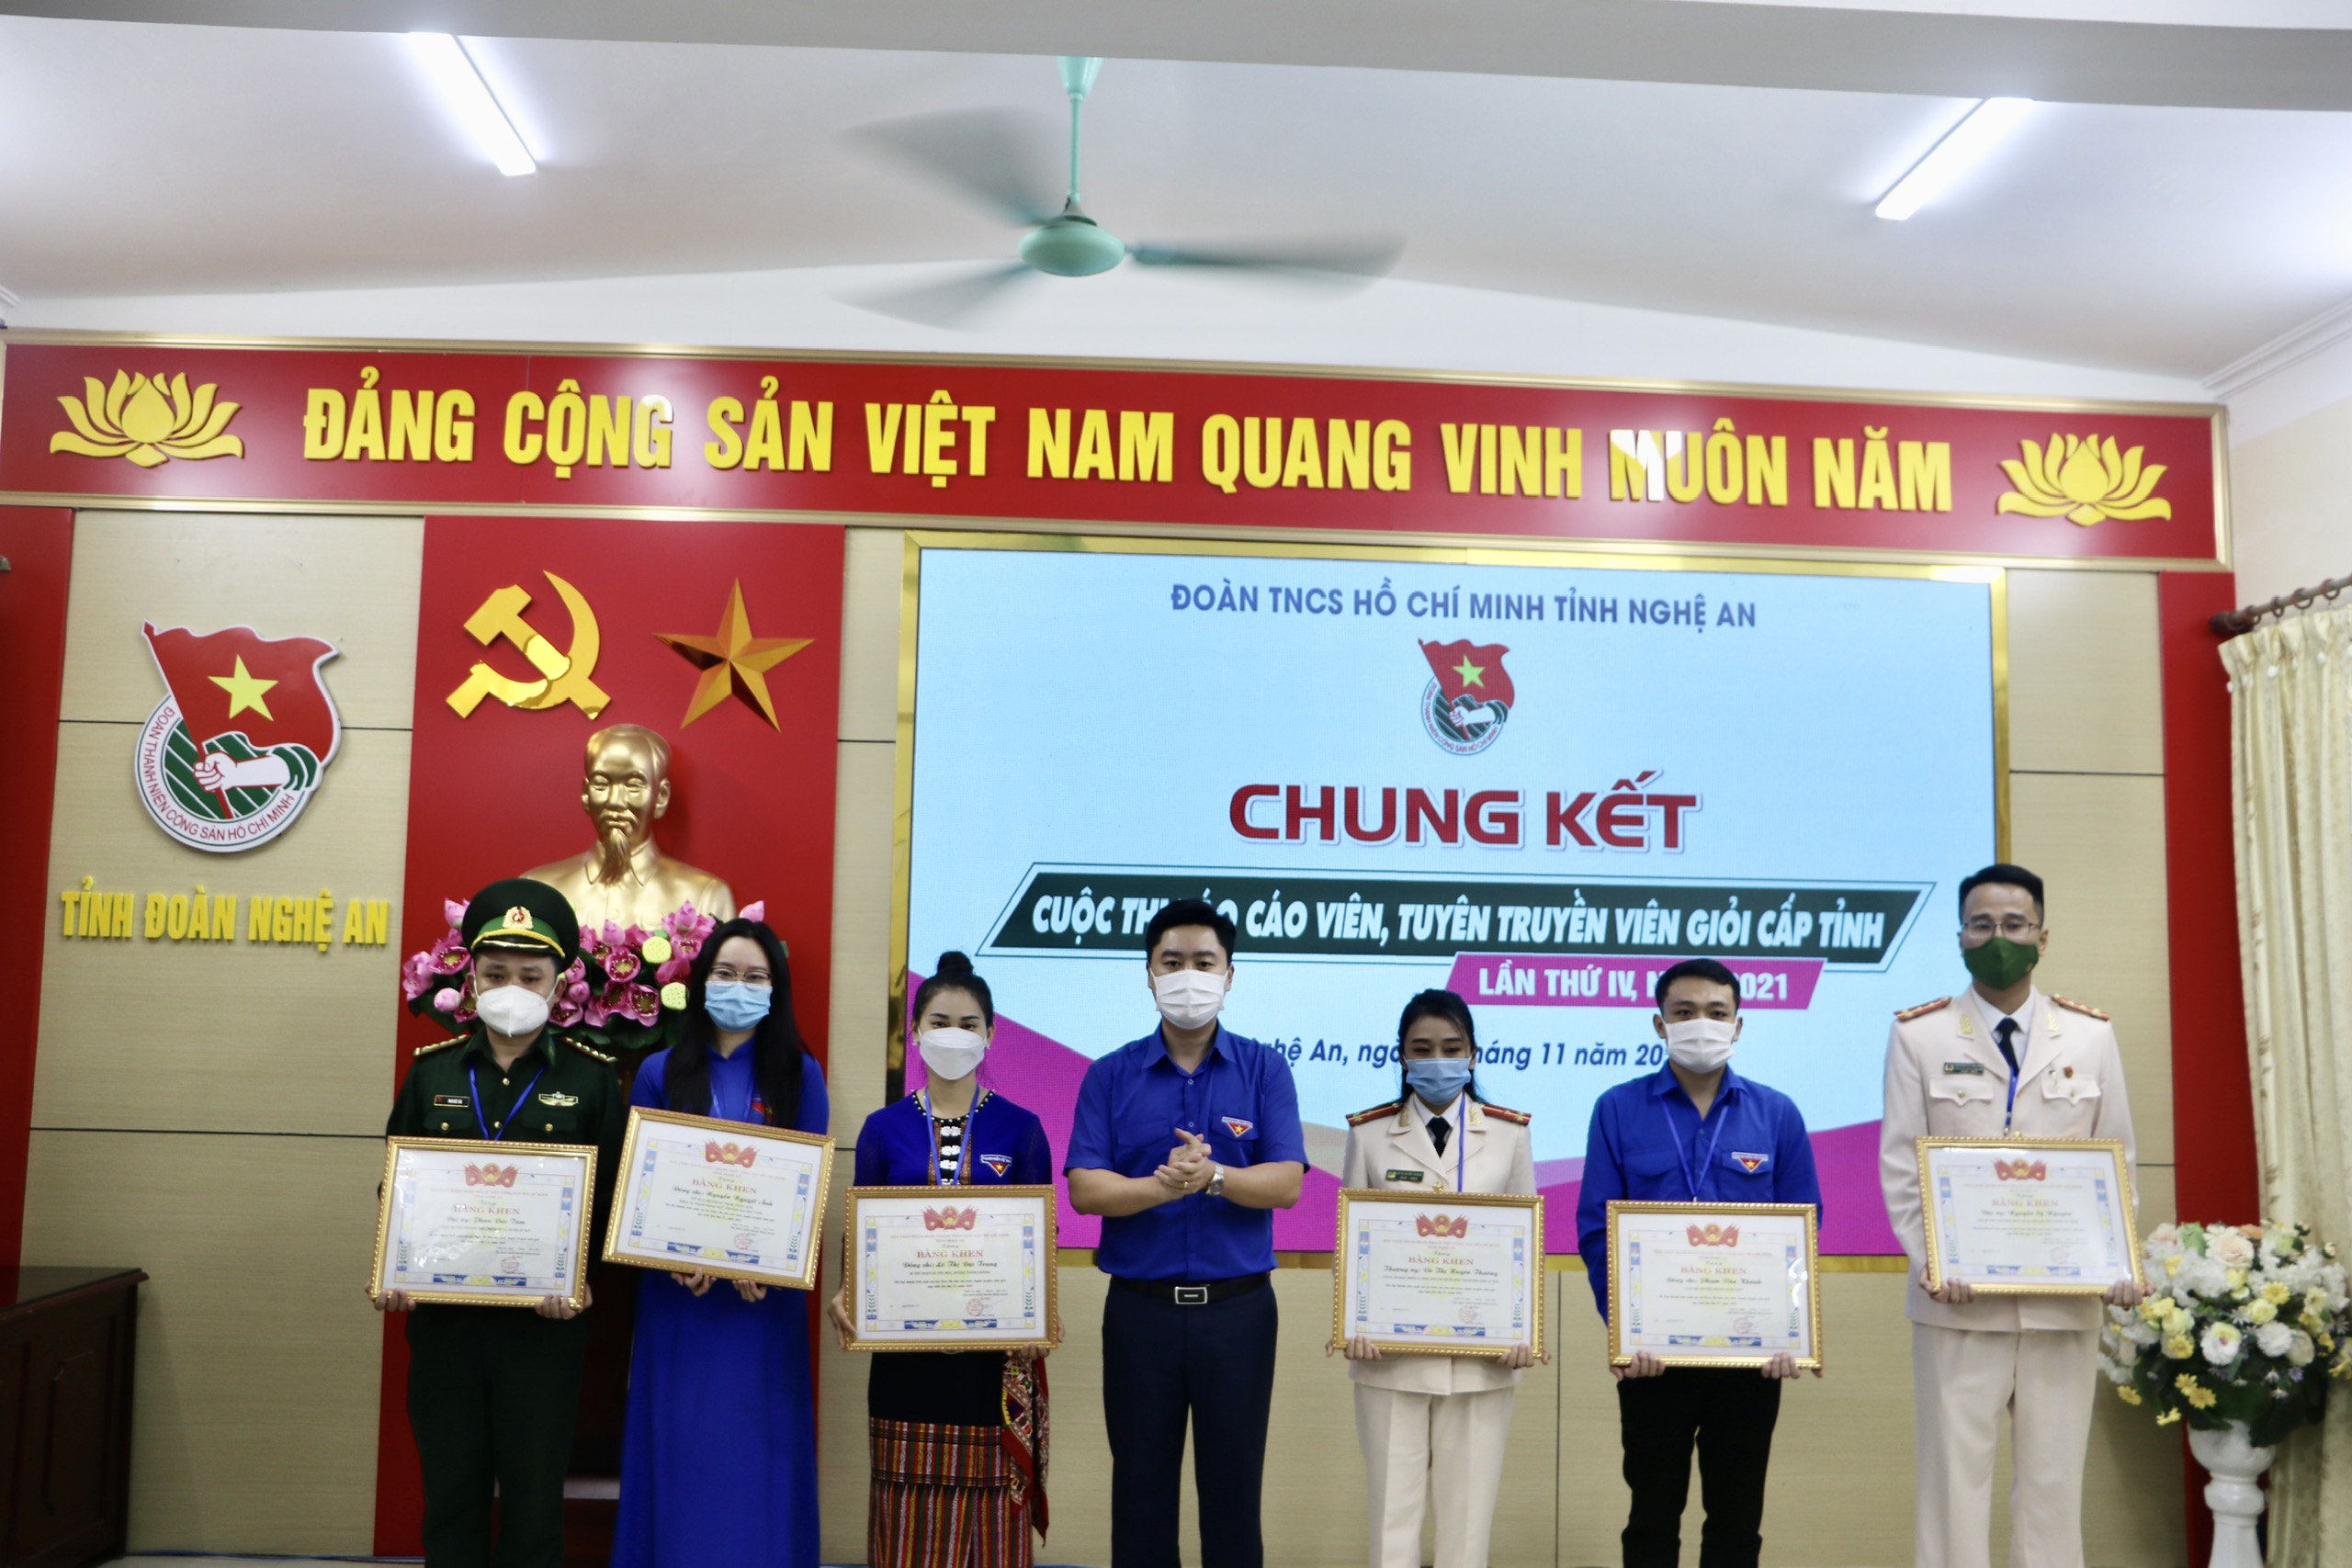 Nghệ An: Chung kết Cuộc thi Báo cáo viên, tuyên truyền viên giỏi của Đoàn cấp tỉnh lần thứ IV năm 2021